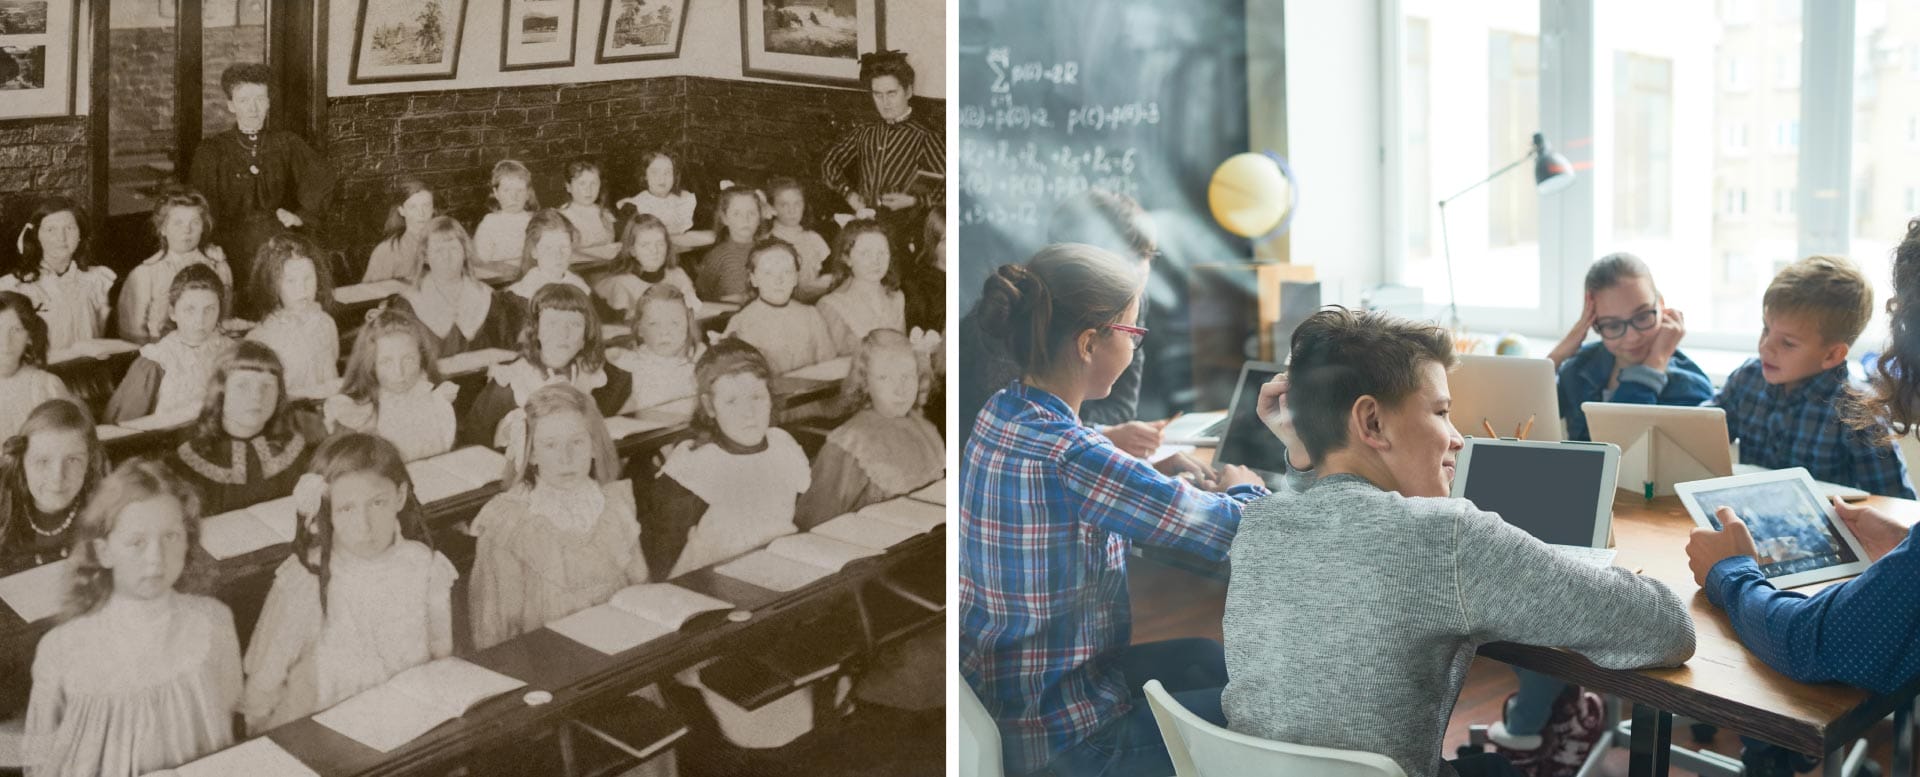 Schule früher und heute: Klassenzimmer